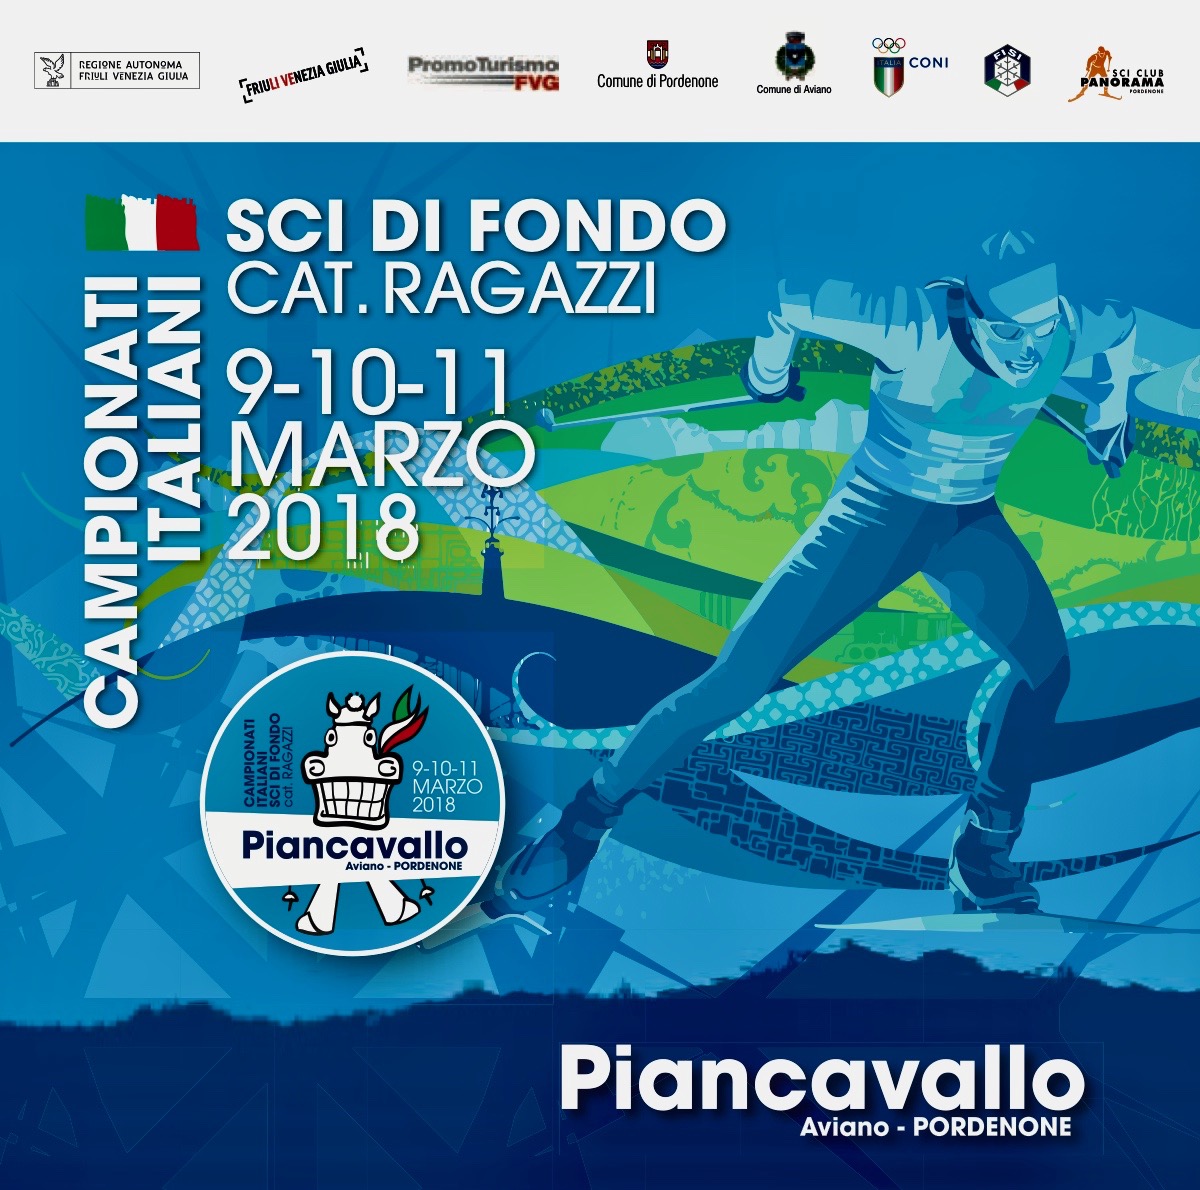 PIANCAVALLO campionati italiani “Ragazzi” di sci di fondo 2